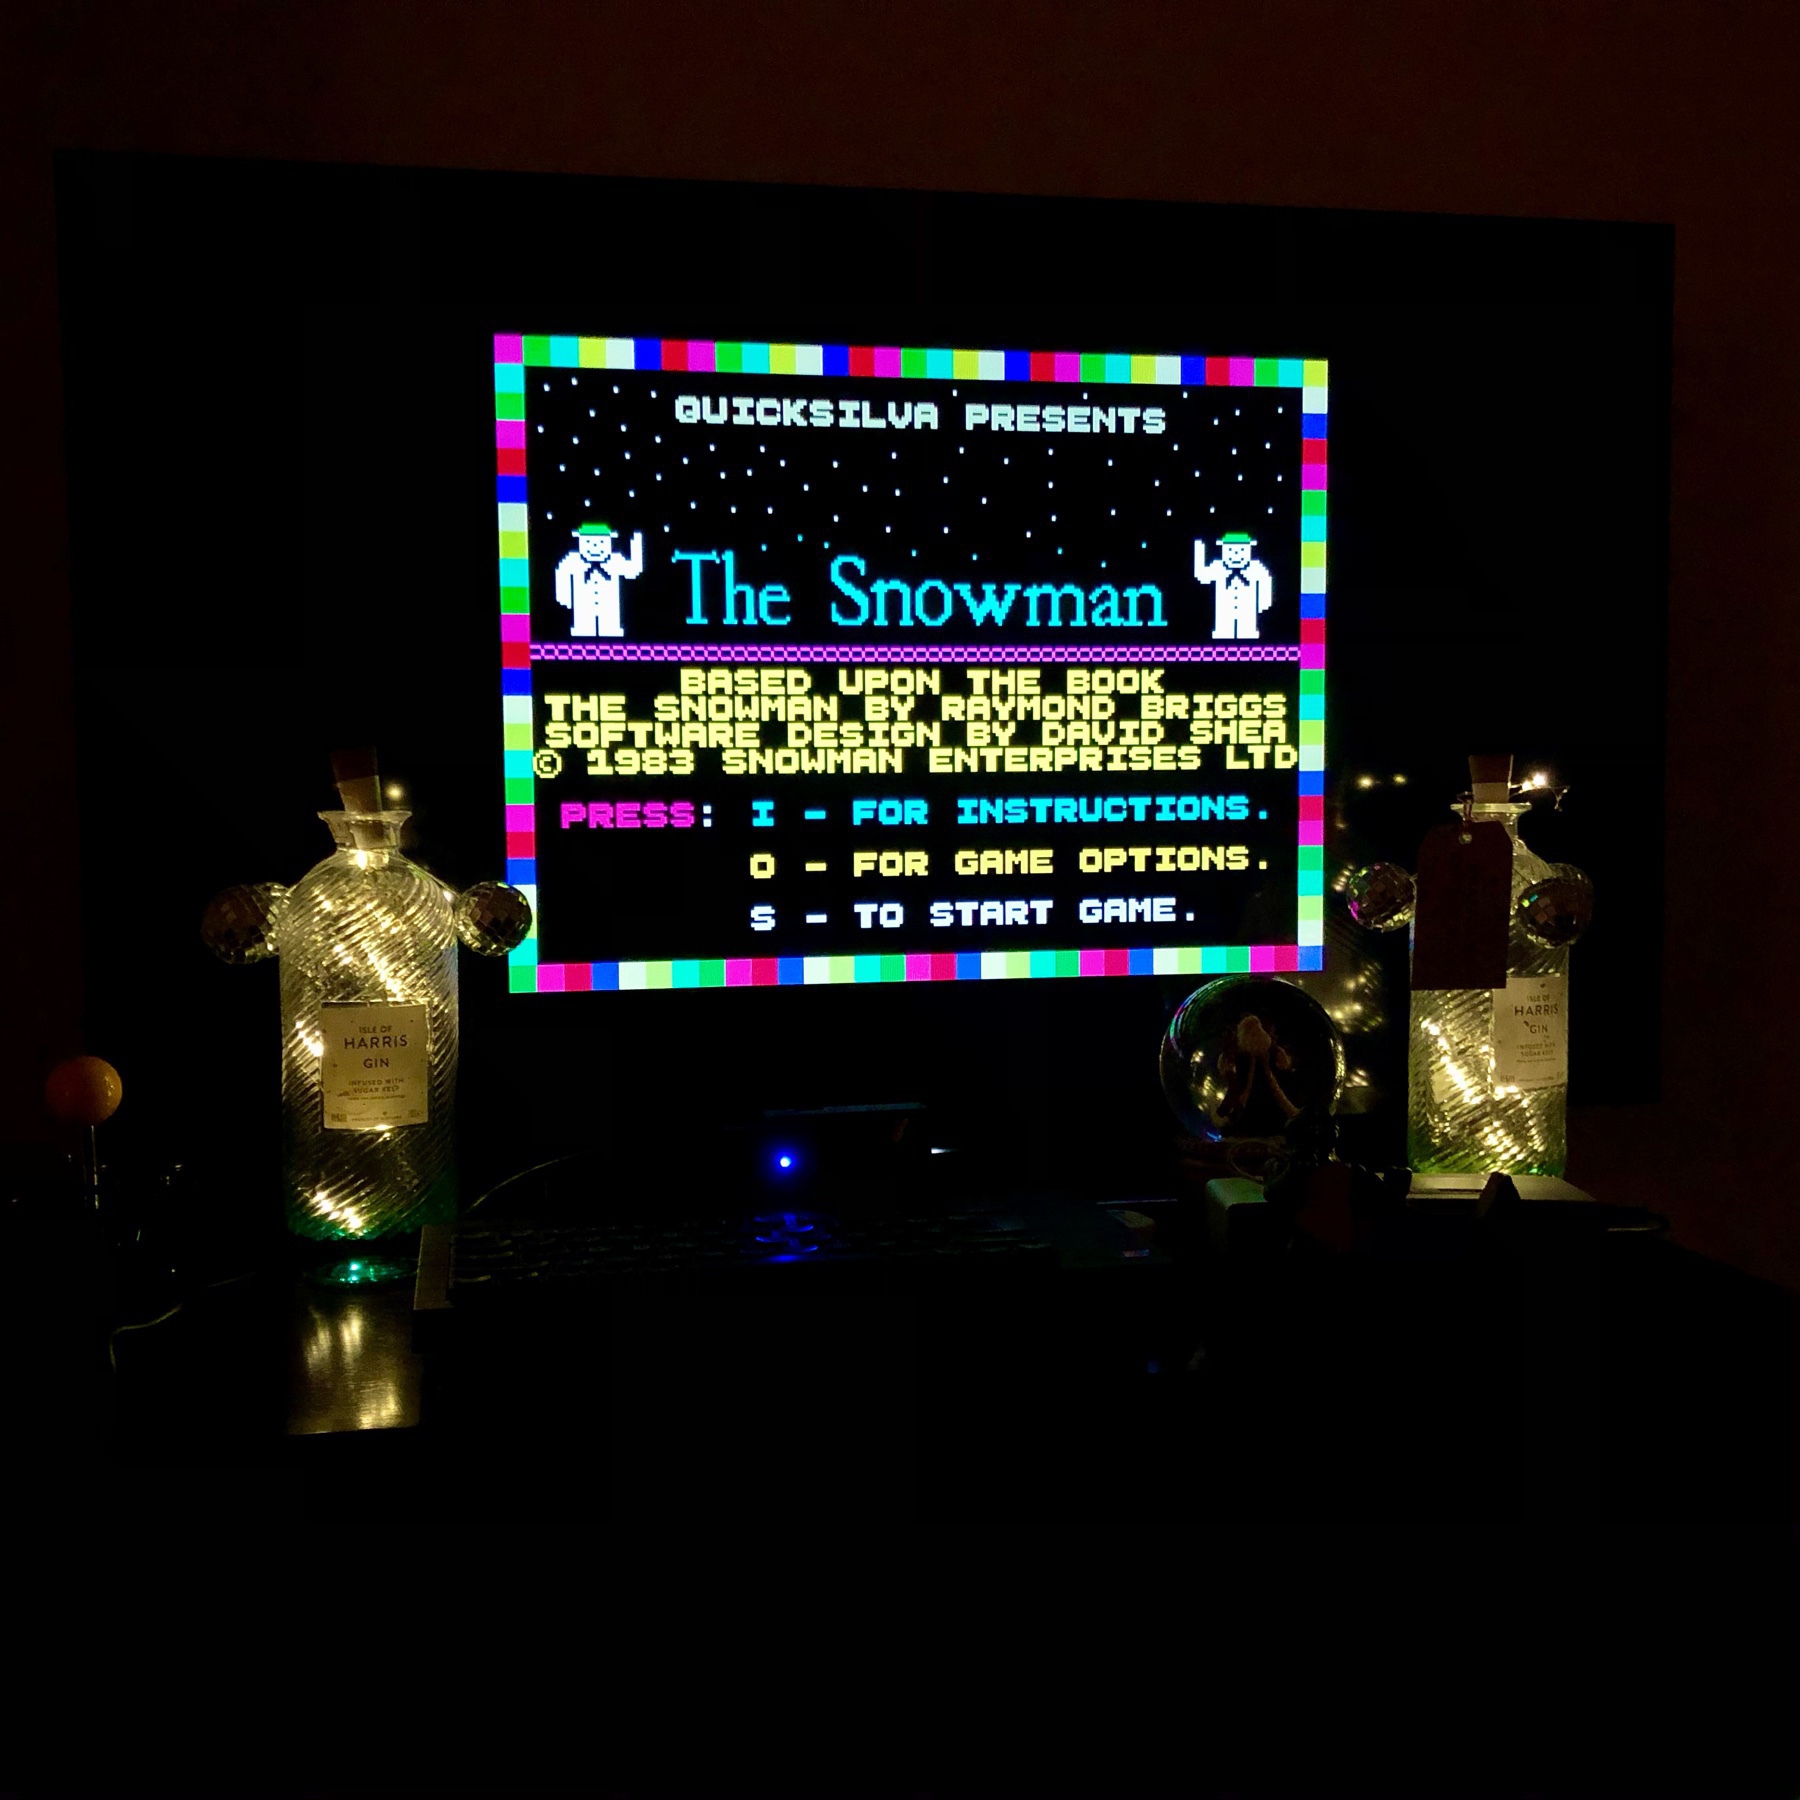 ZX Spectrum screenshot, title screen of The Snowman by Quicksilva from 1983